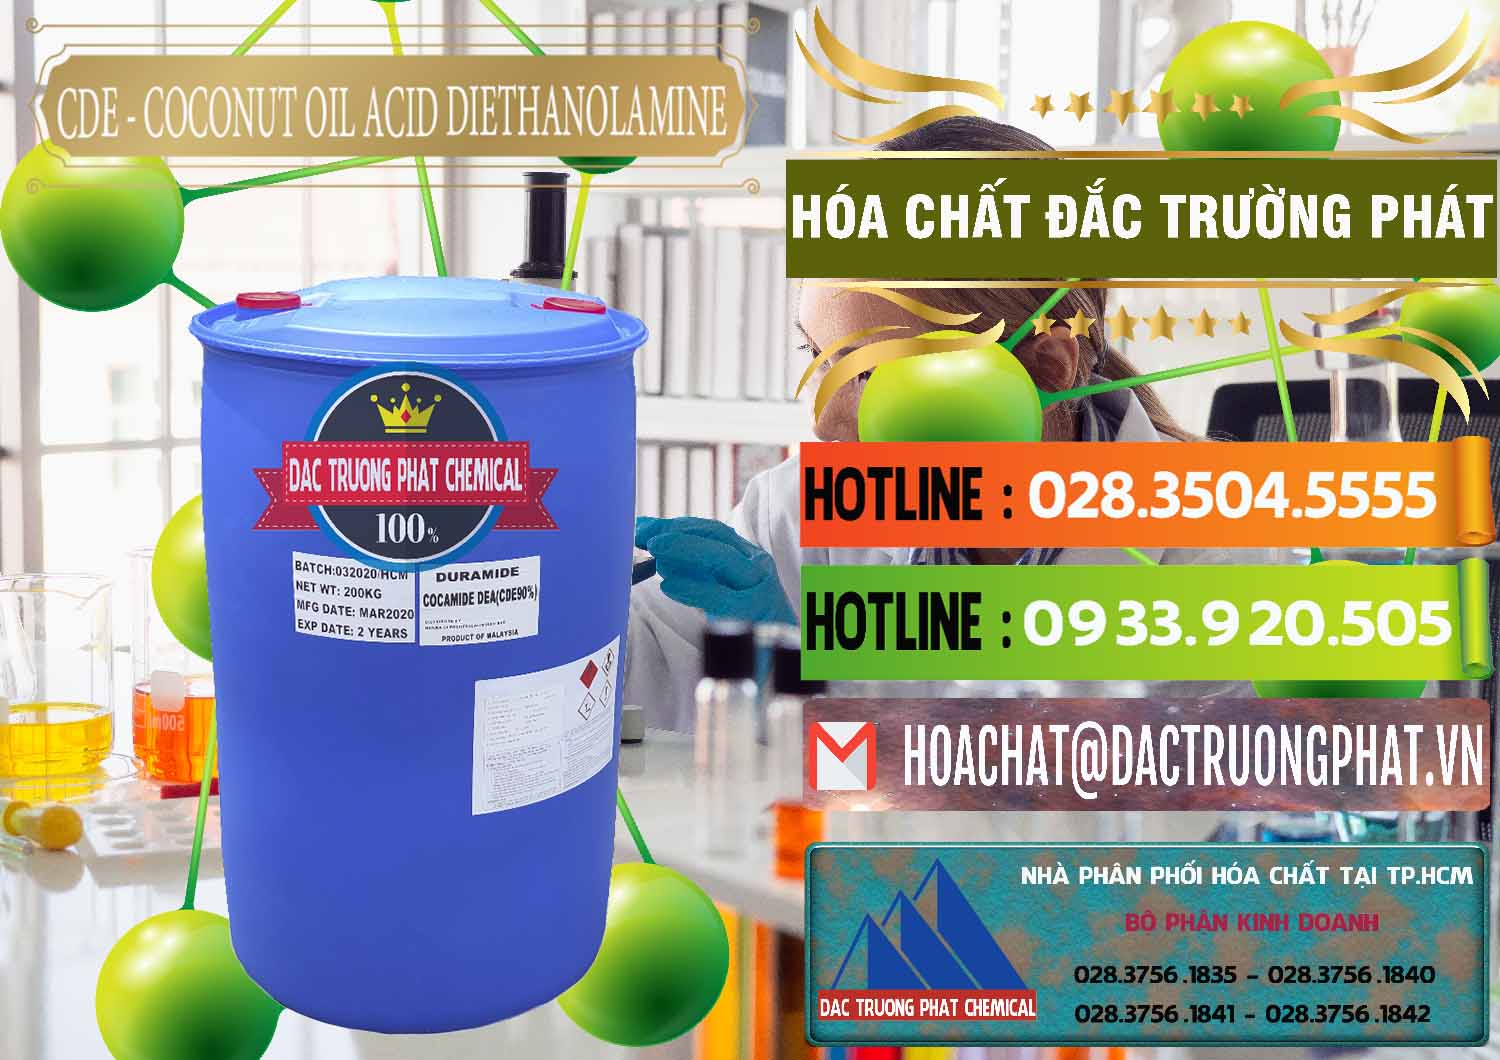 Đơn vị phân phối _ bán CDE - Coconut Oil Acid Diethanolamine Mã Lai Malaysia - 0311 - Chuyên phân phối và kinh doanh hóa chất tại TP.HCM - cungcaphoachat.com.vn